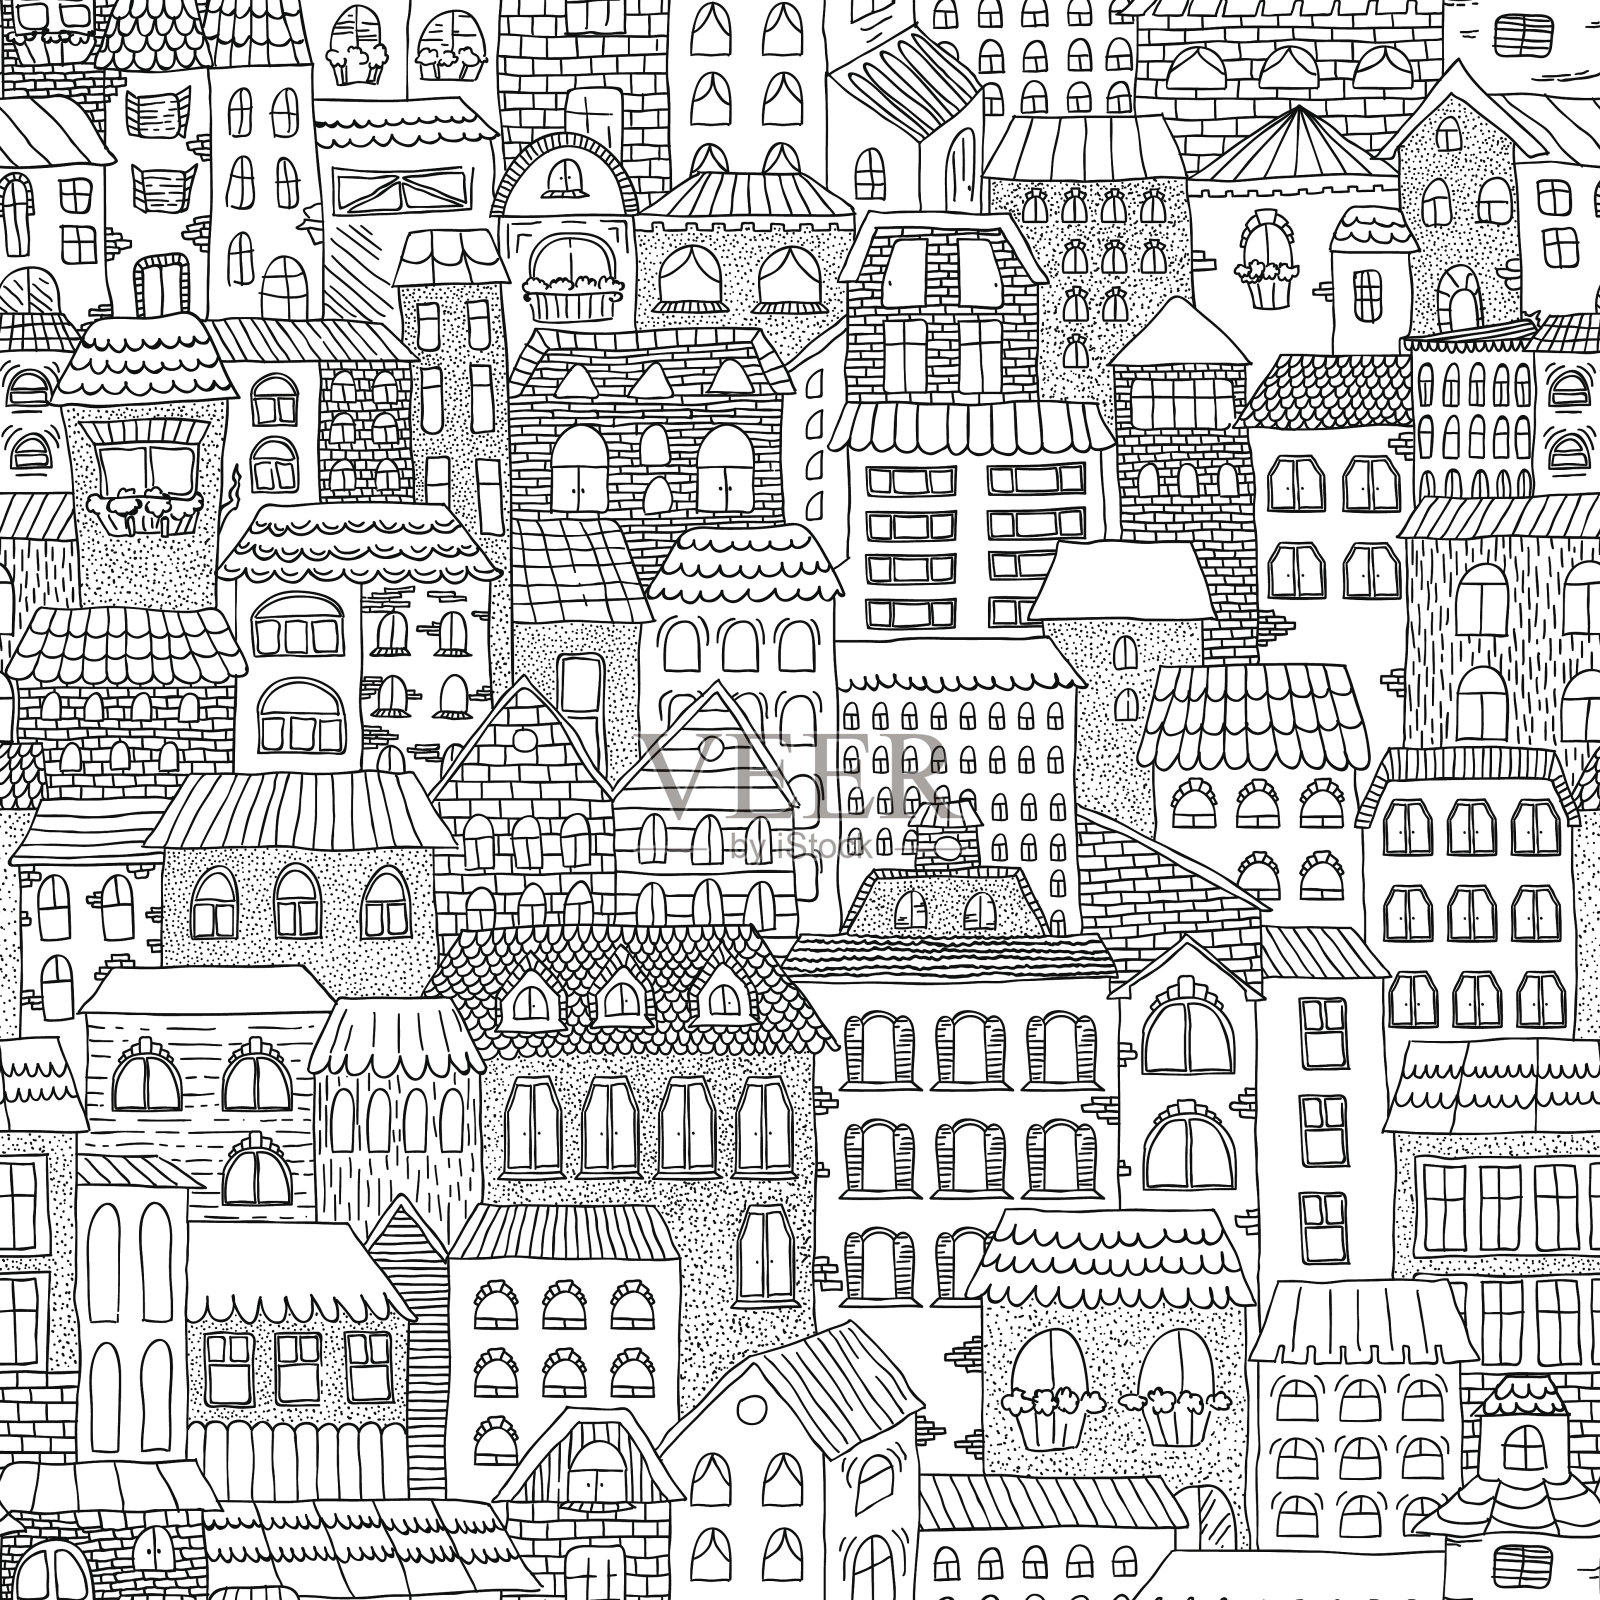 黑白素描无缝的城市全景。插画图片素材